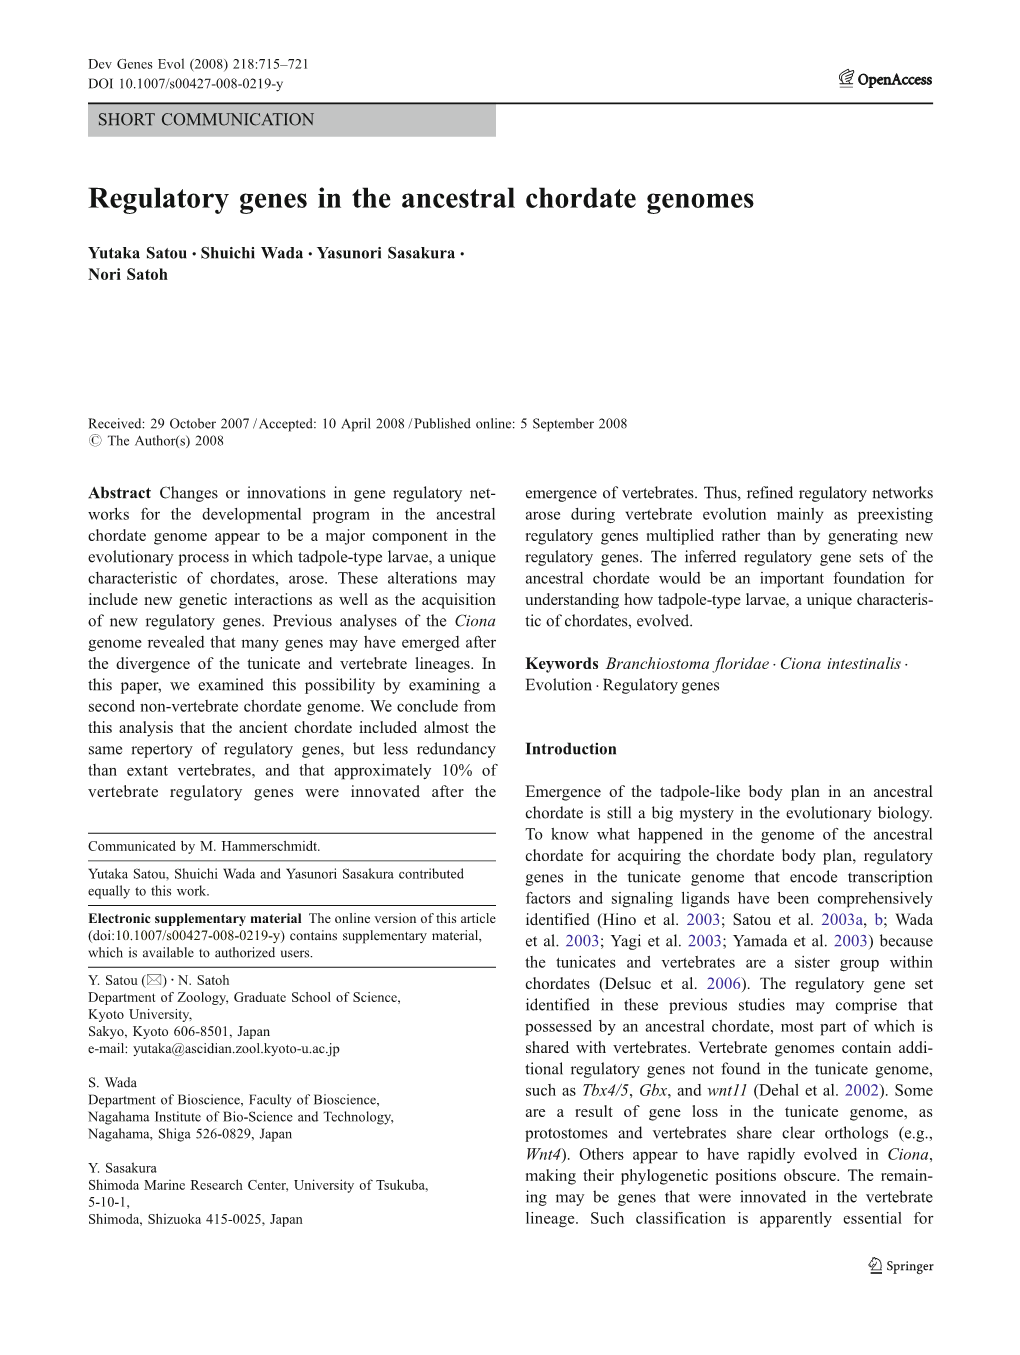 Regulatory Genes in the Ancestral Chordate Genomes